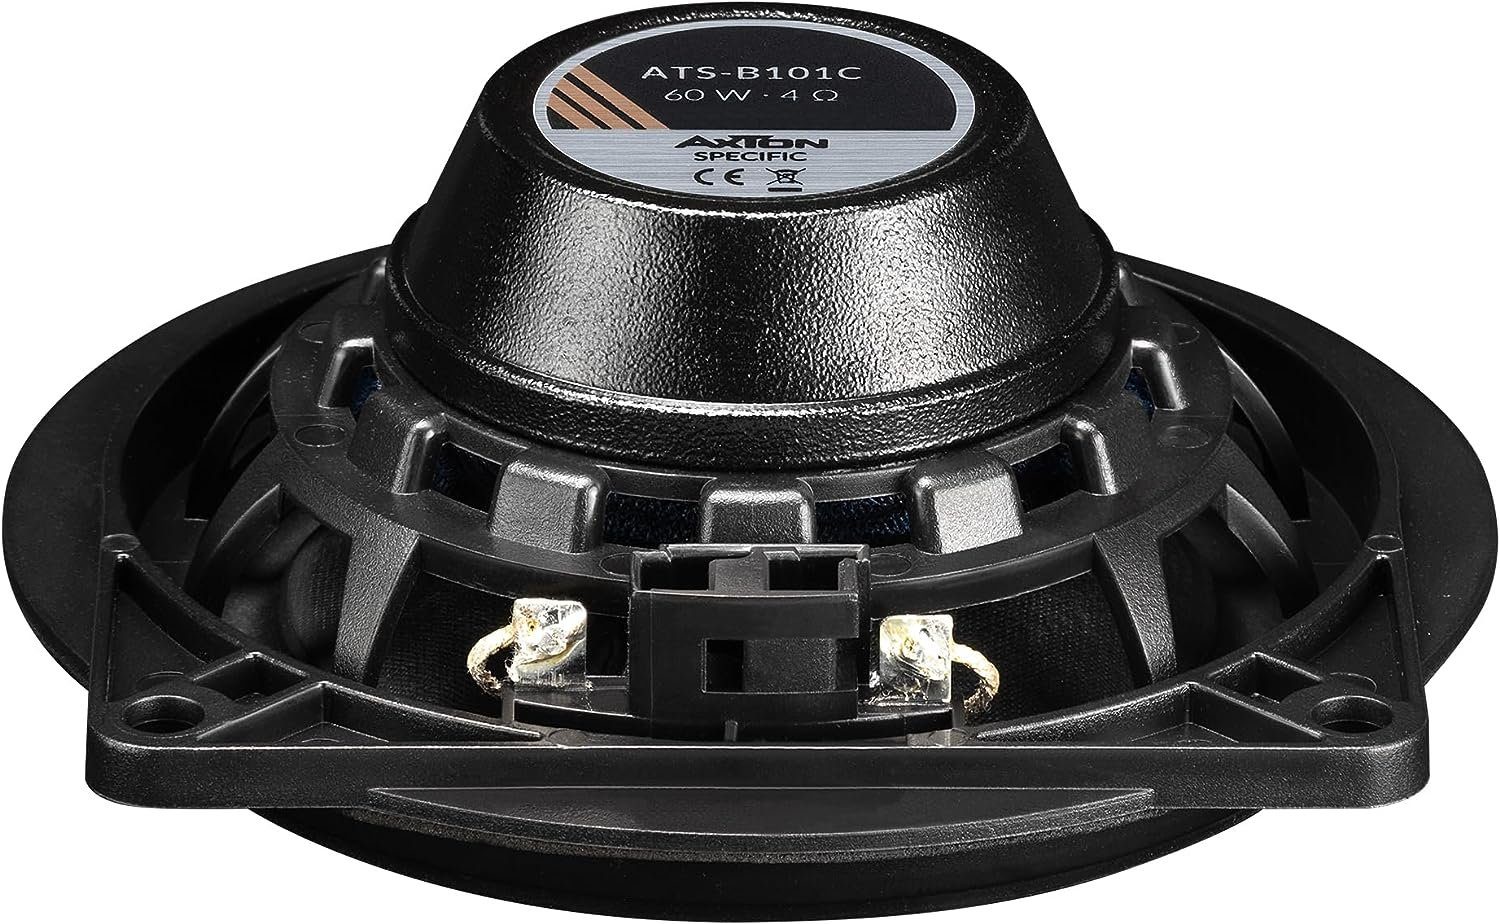 2-Wege-Lautsprecher ATS-B101C für Axton BMW Auto-Lautsprecher Axton